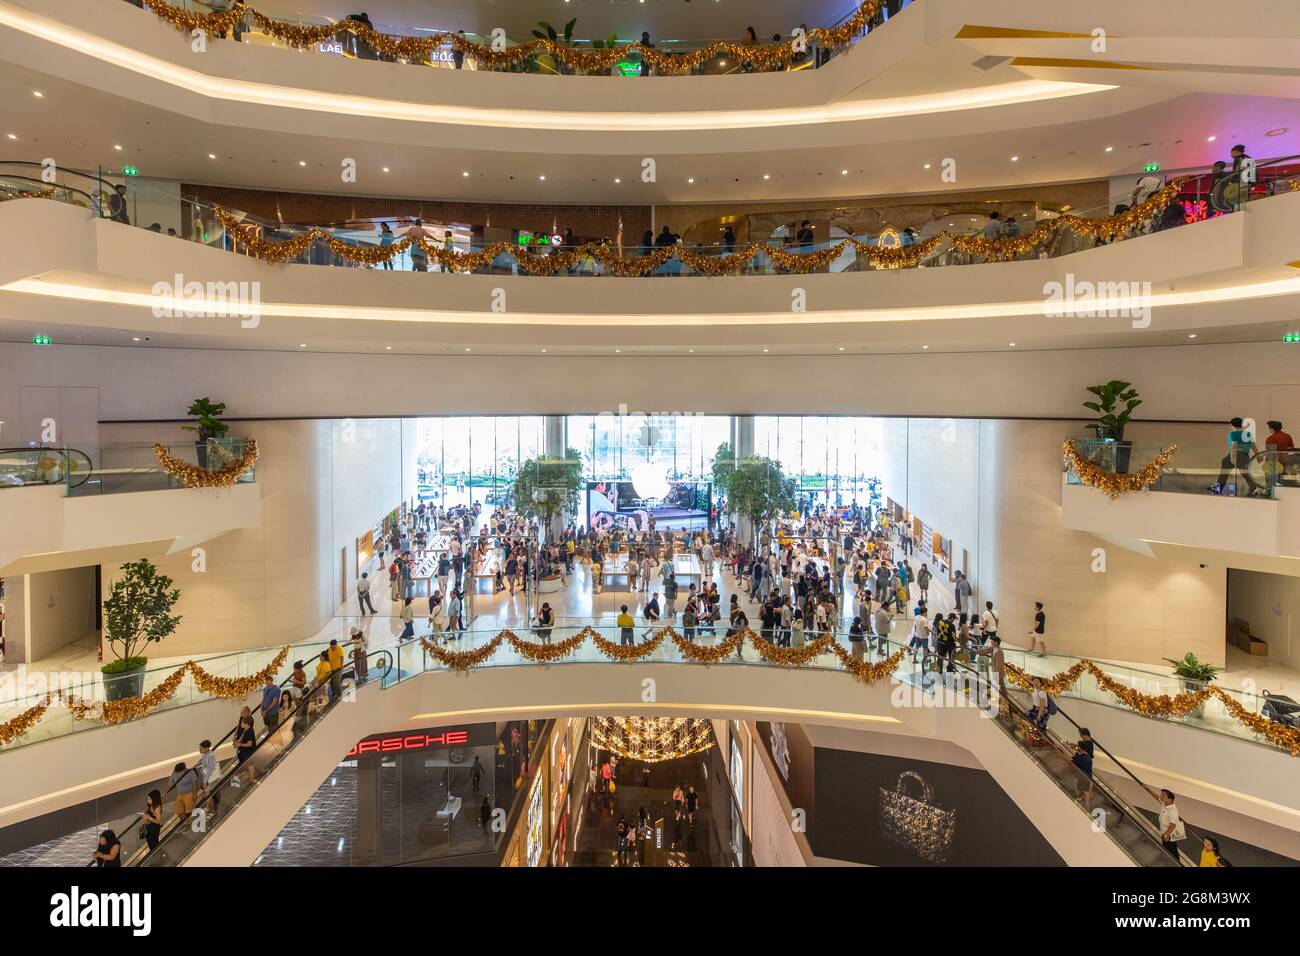 BANGK0K, THAILAND - DEZEMBER 05 2018: Große Anzahl von Menschen im ersten Apple Store in Thailand bei Iconsiam, einem der größten Kaufhaus in Thailand Stockfoto